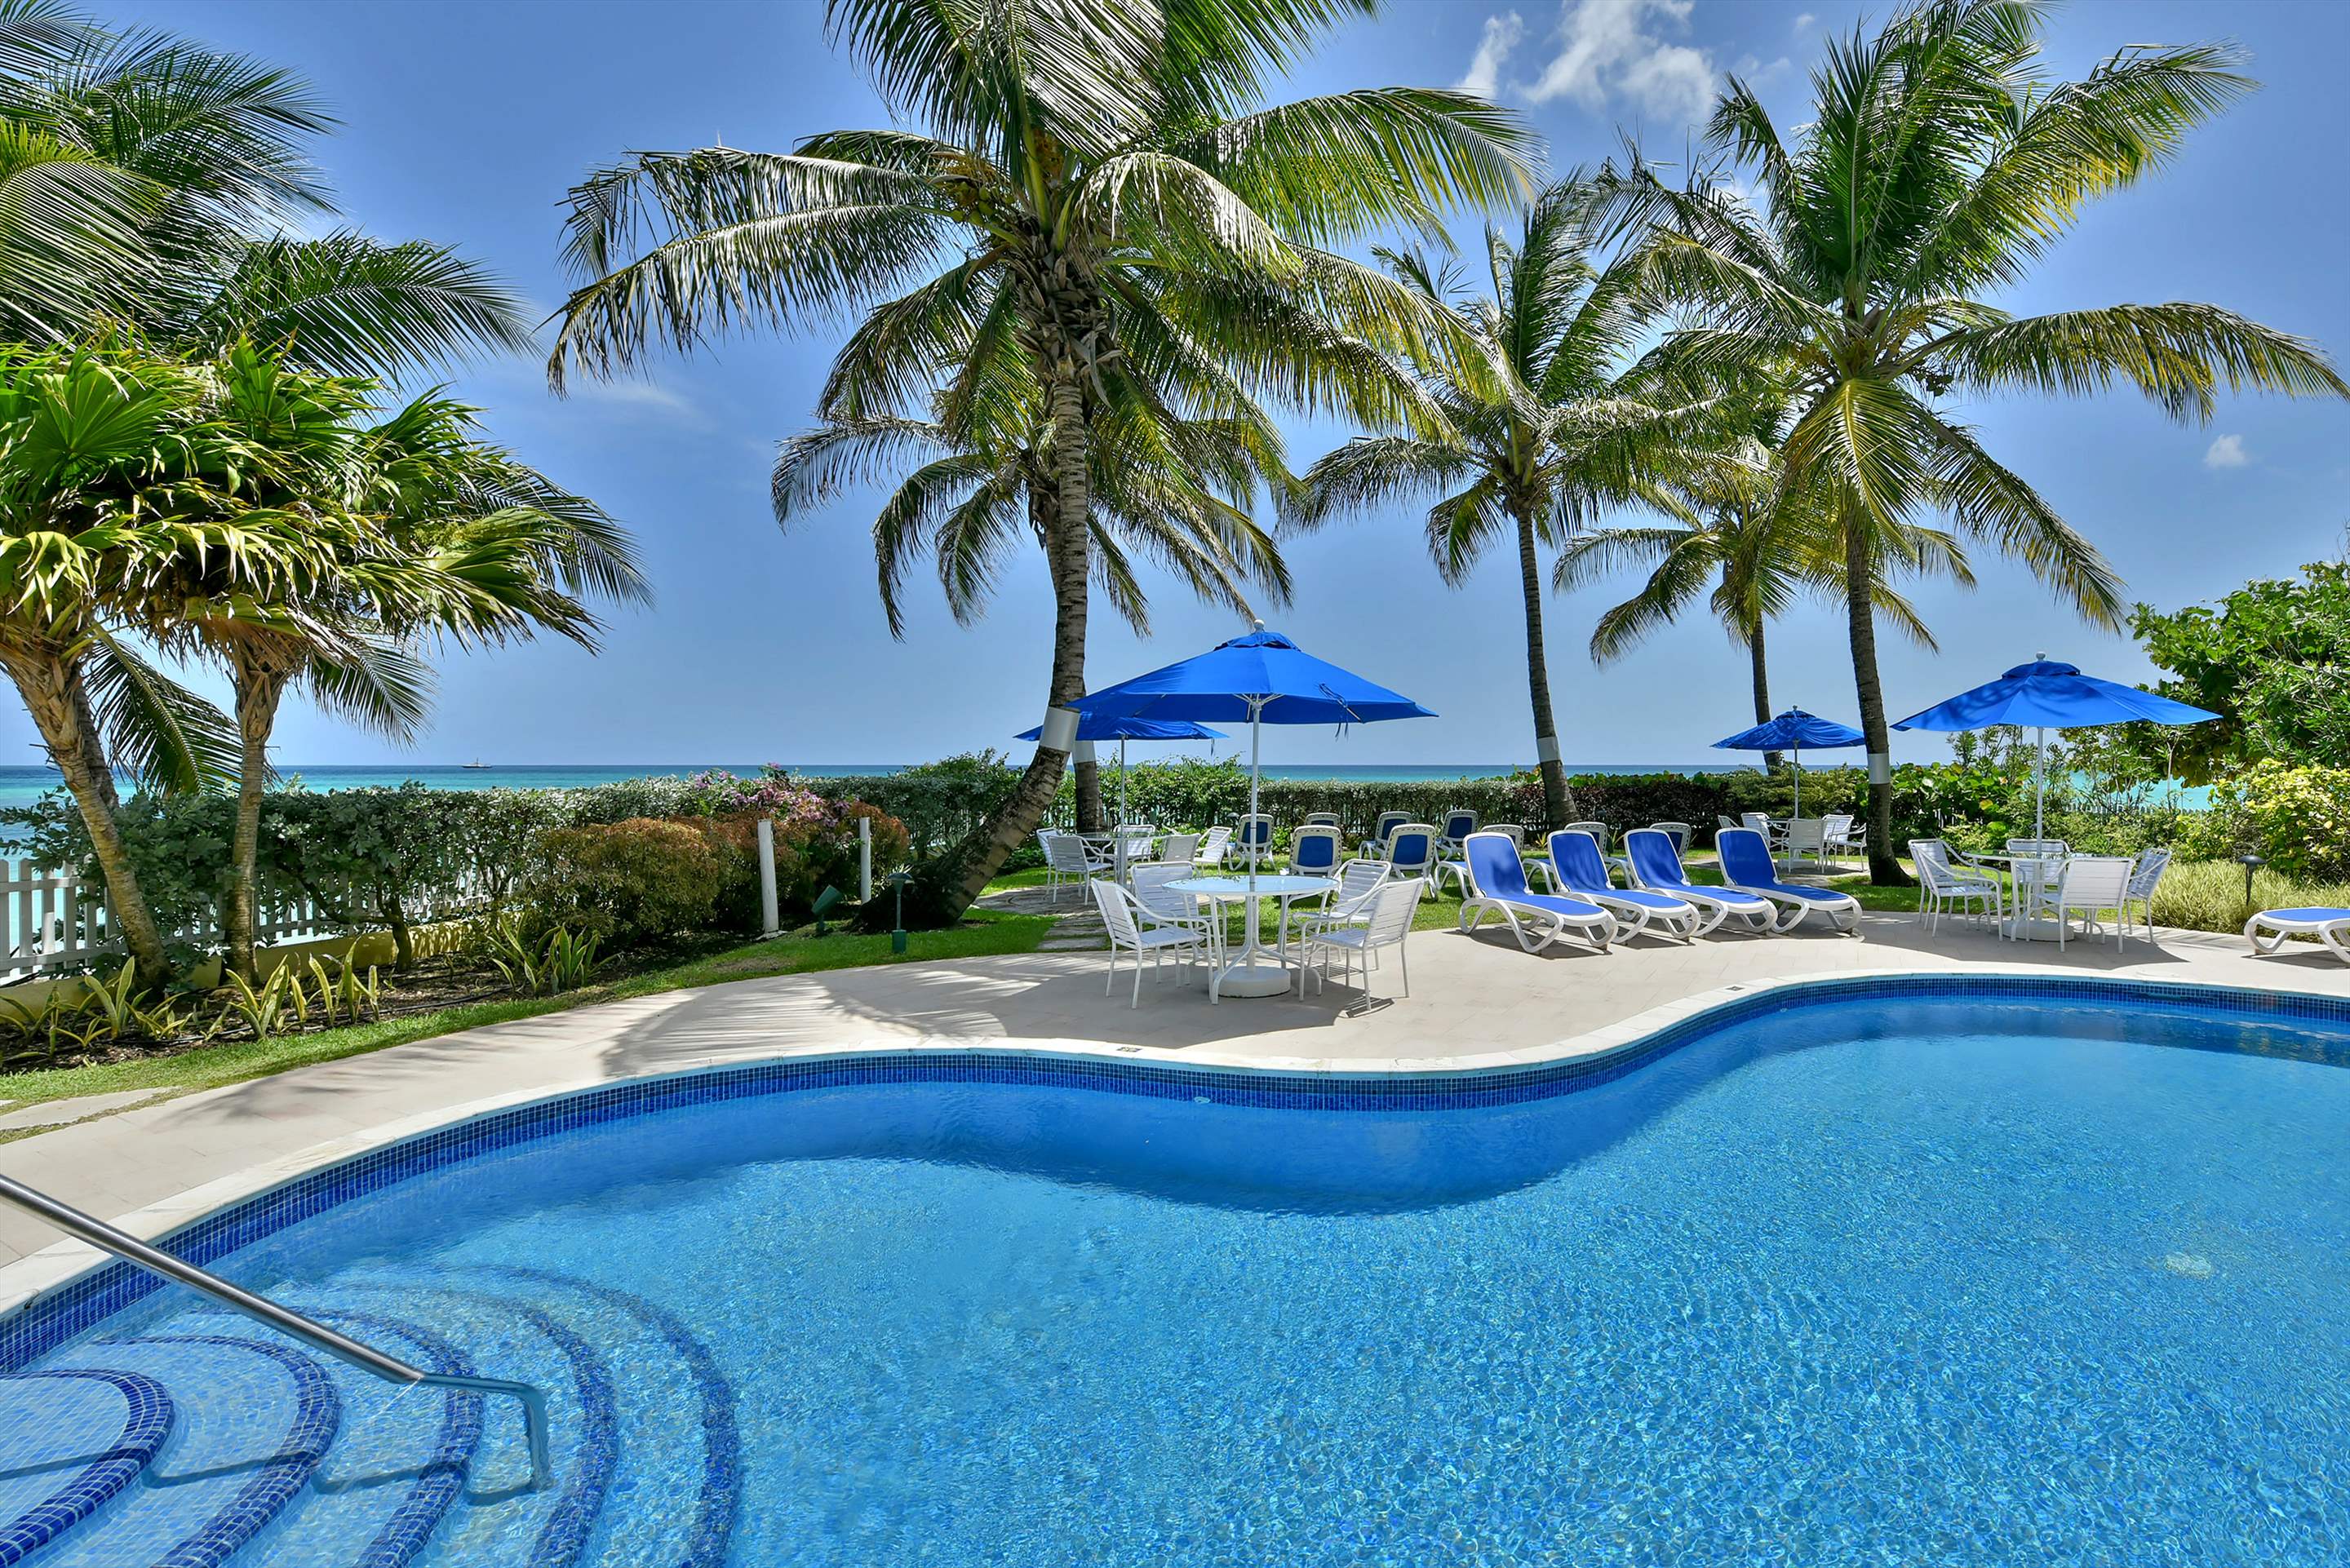 Maxwell Beach Villas 501, 2 bedroom, 2 bedroom villa in St. Lawrence Gap & South Coast, Barbados Photo #1